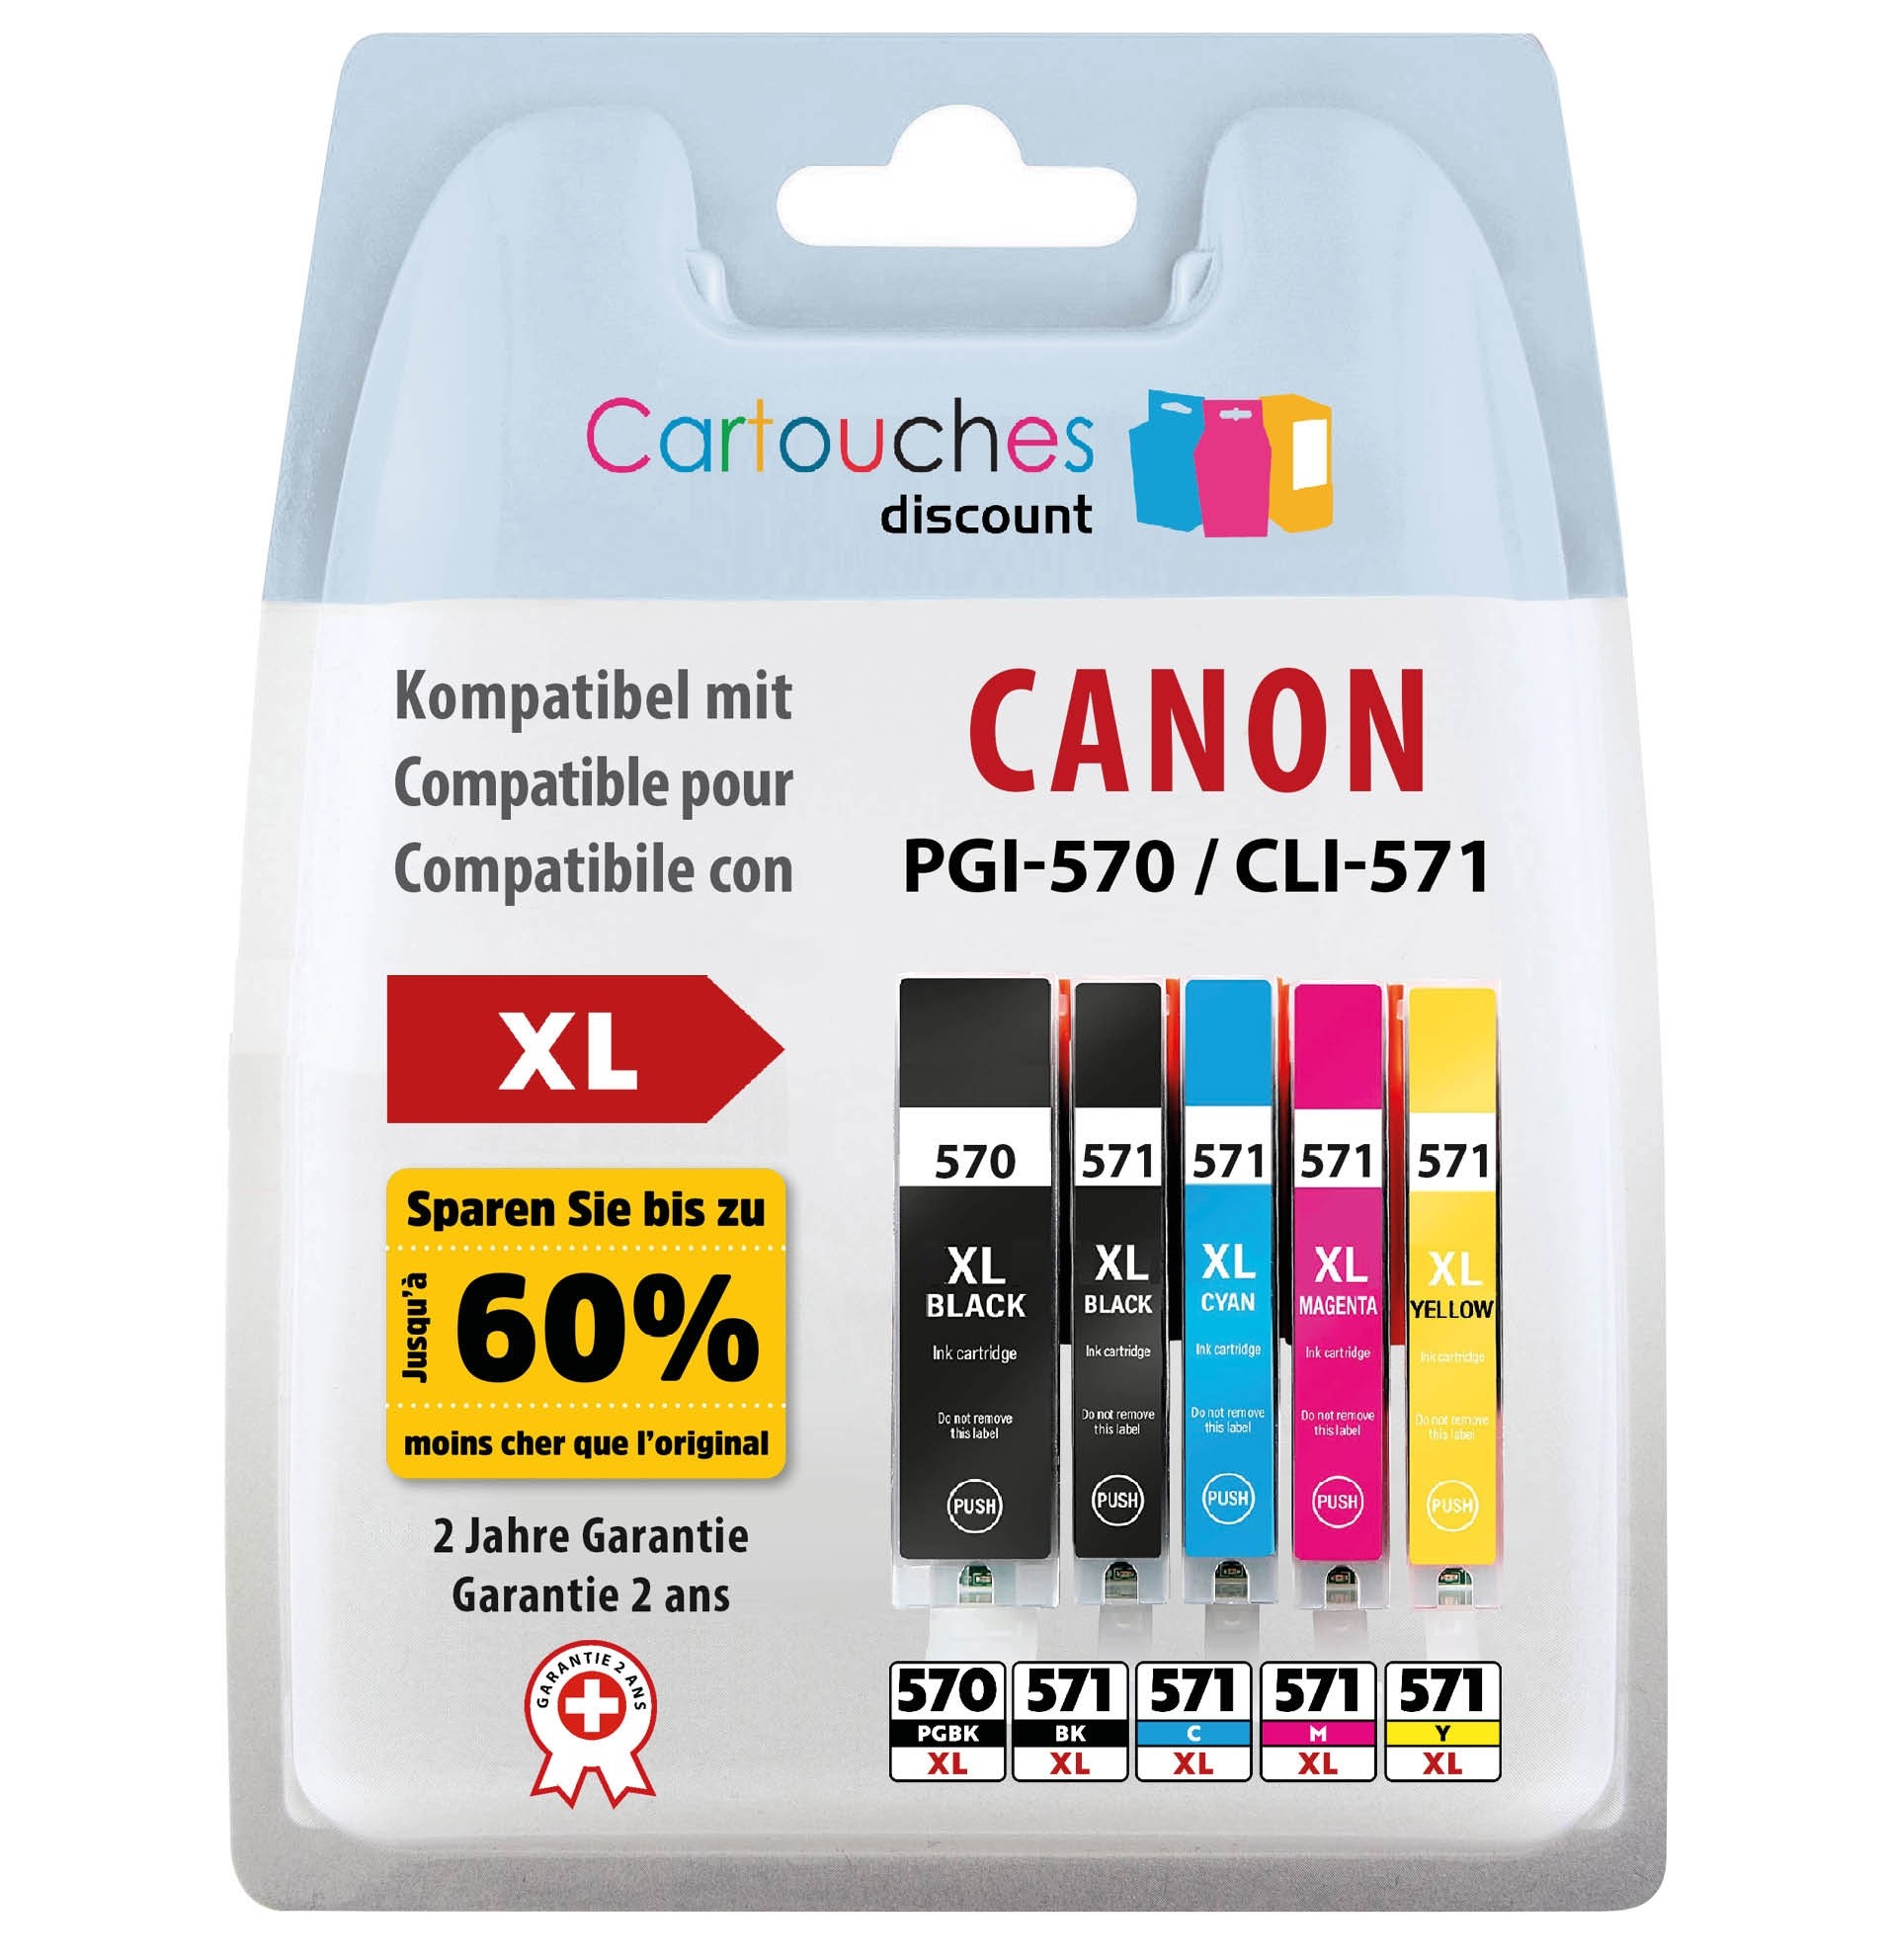 6 cartouches compatibles Canon PGI-570 / CLI-571 XL grise incluse